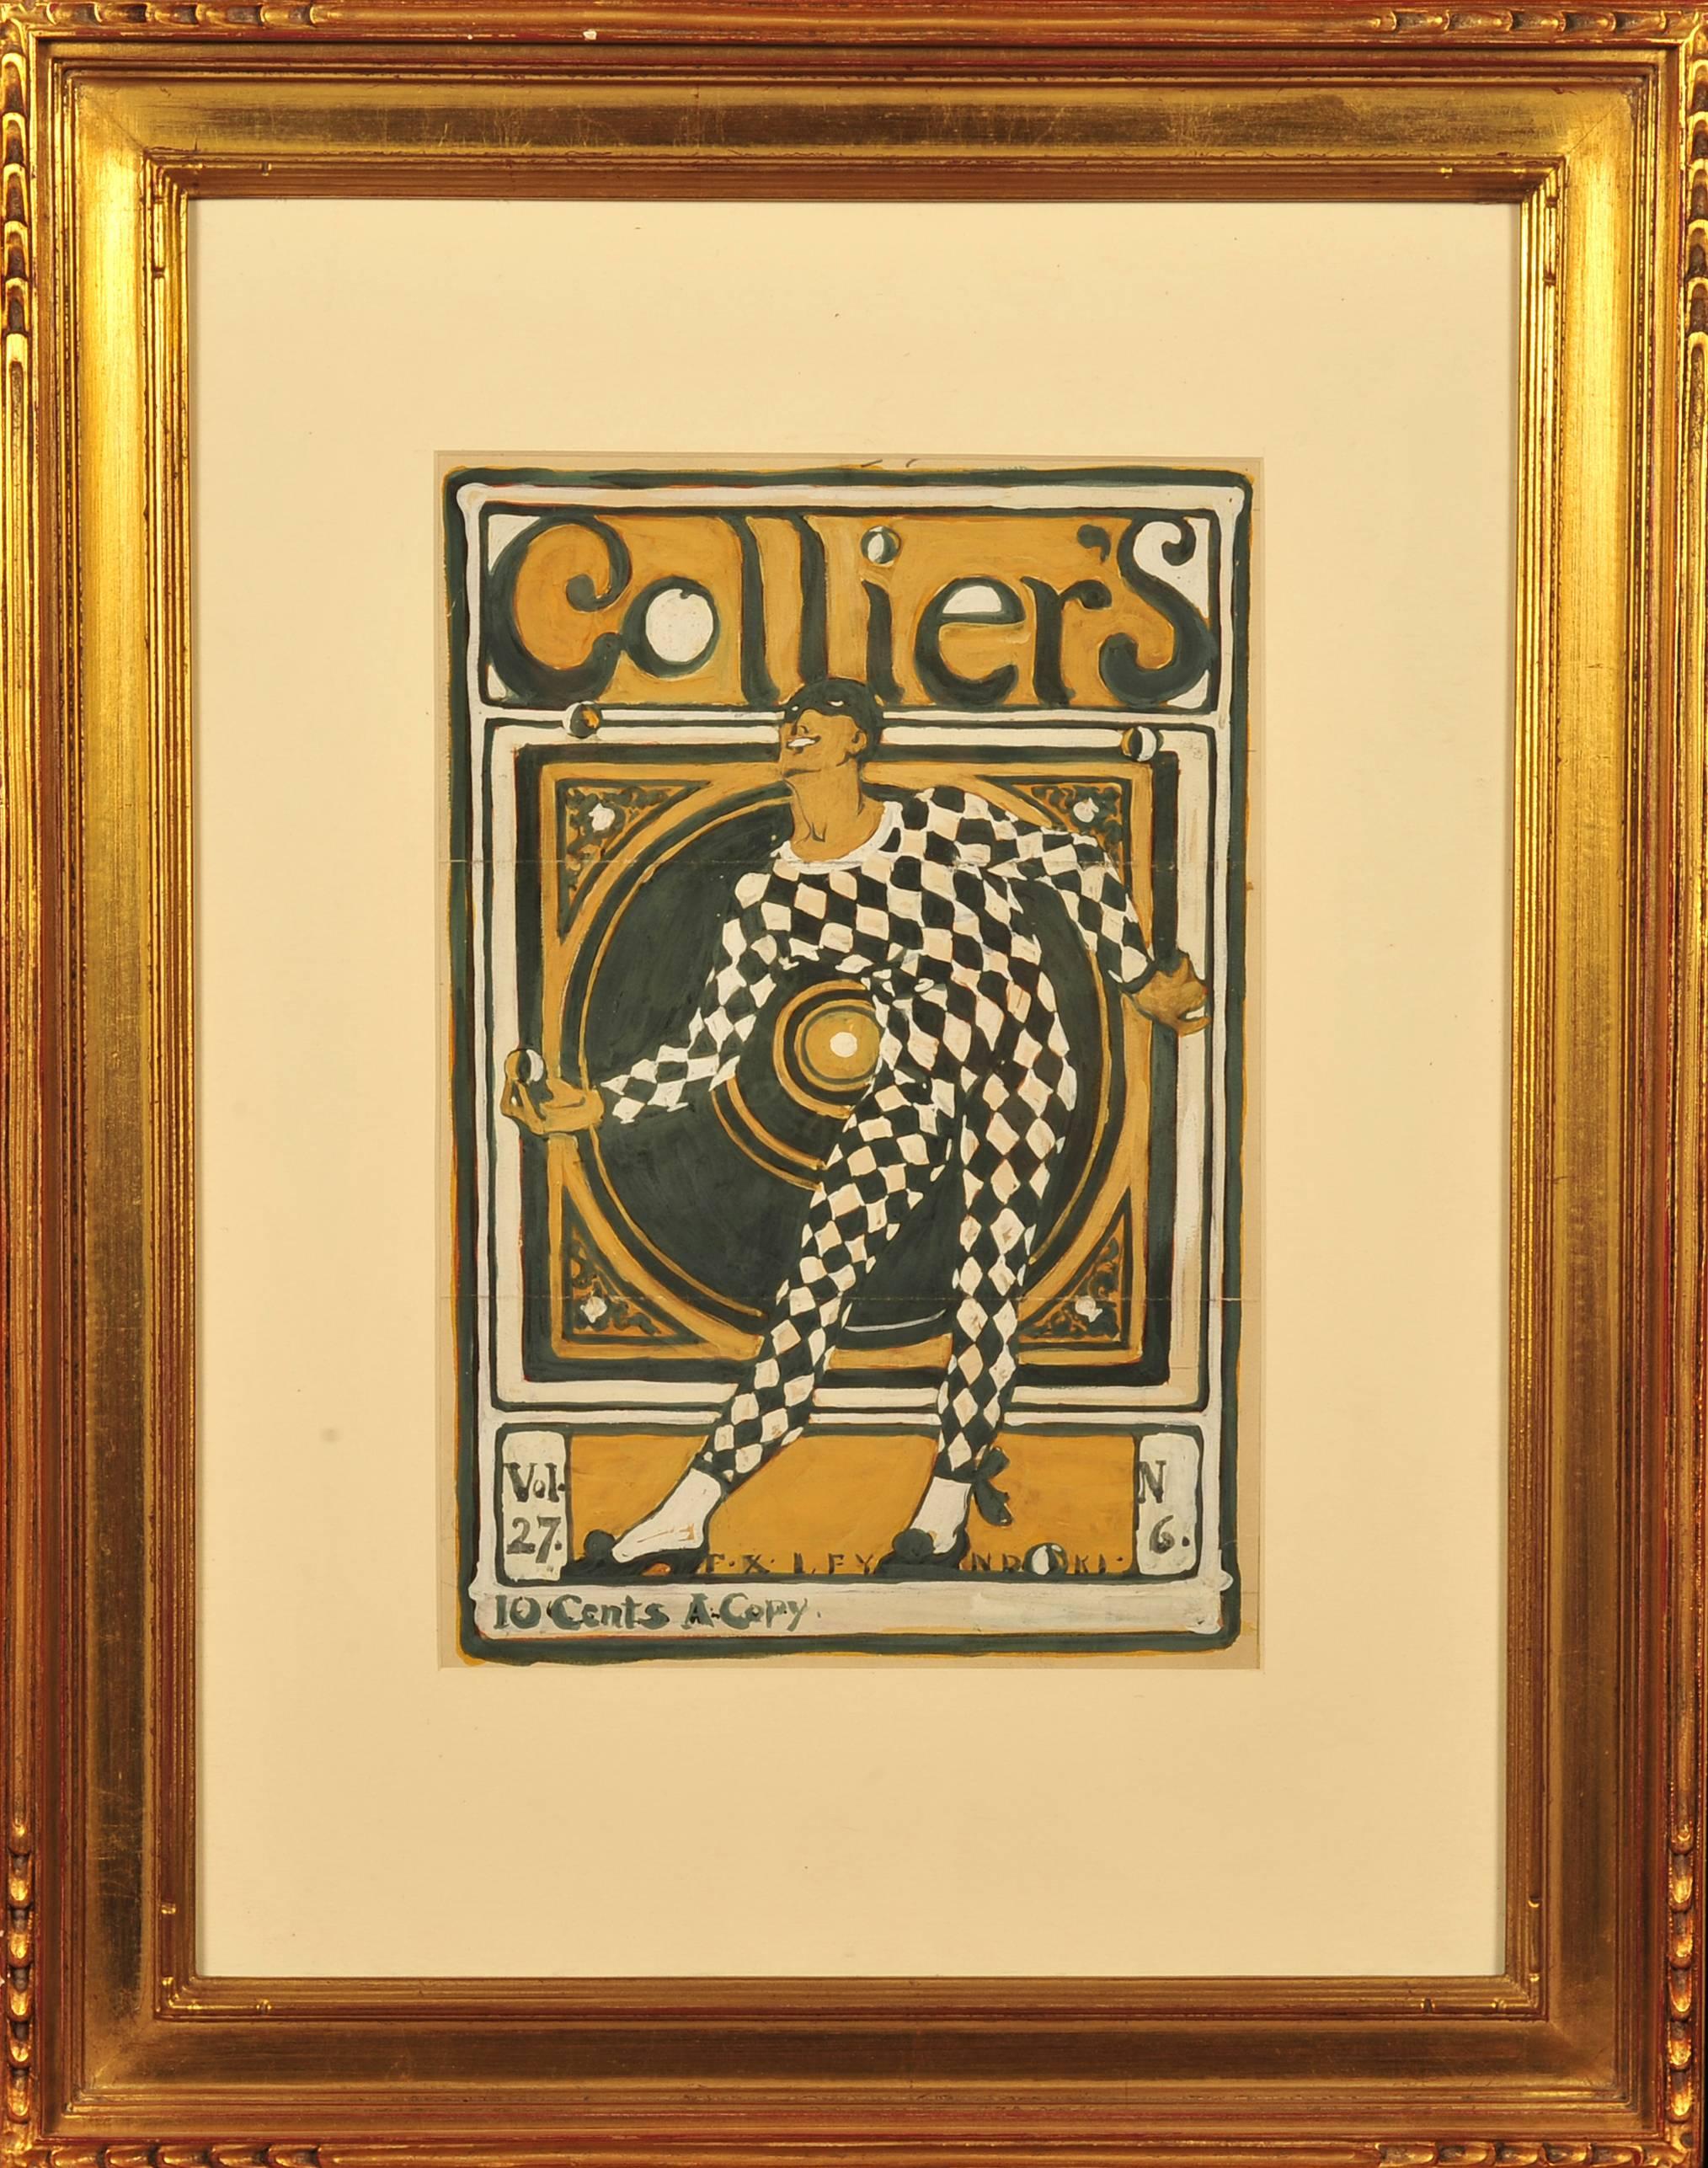 Étude pour la couverture du magazine Collier's - Painting de Frank Xavier Leyendecker